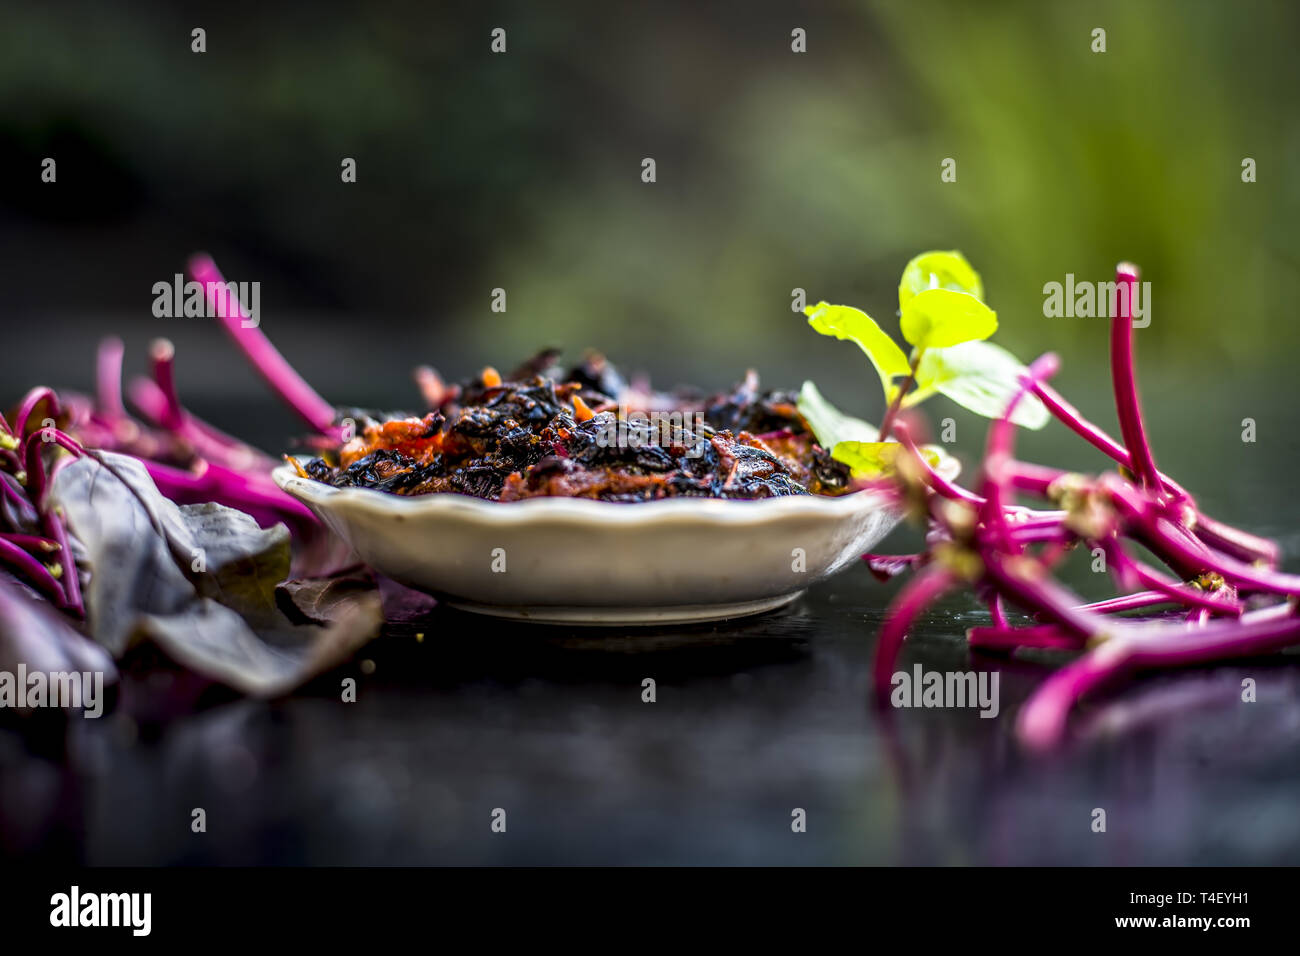 Close up of plat populaire de feuilles d'amarante ou chauli chowli ou ou ou ou harive thotakura chaulai soppu dans une plaque de verre avec des feuilles et de l'amarante Banque D'Images